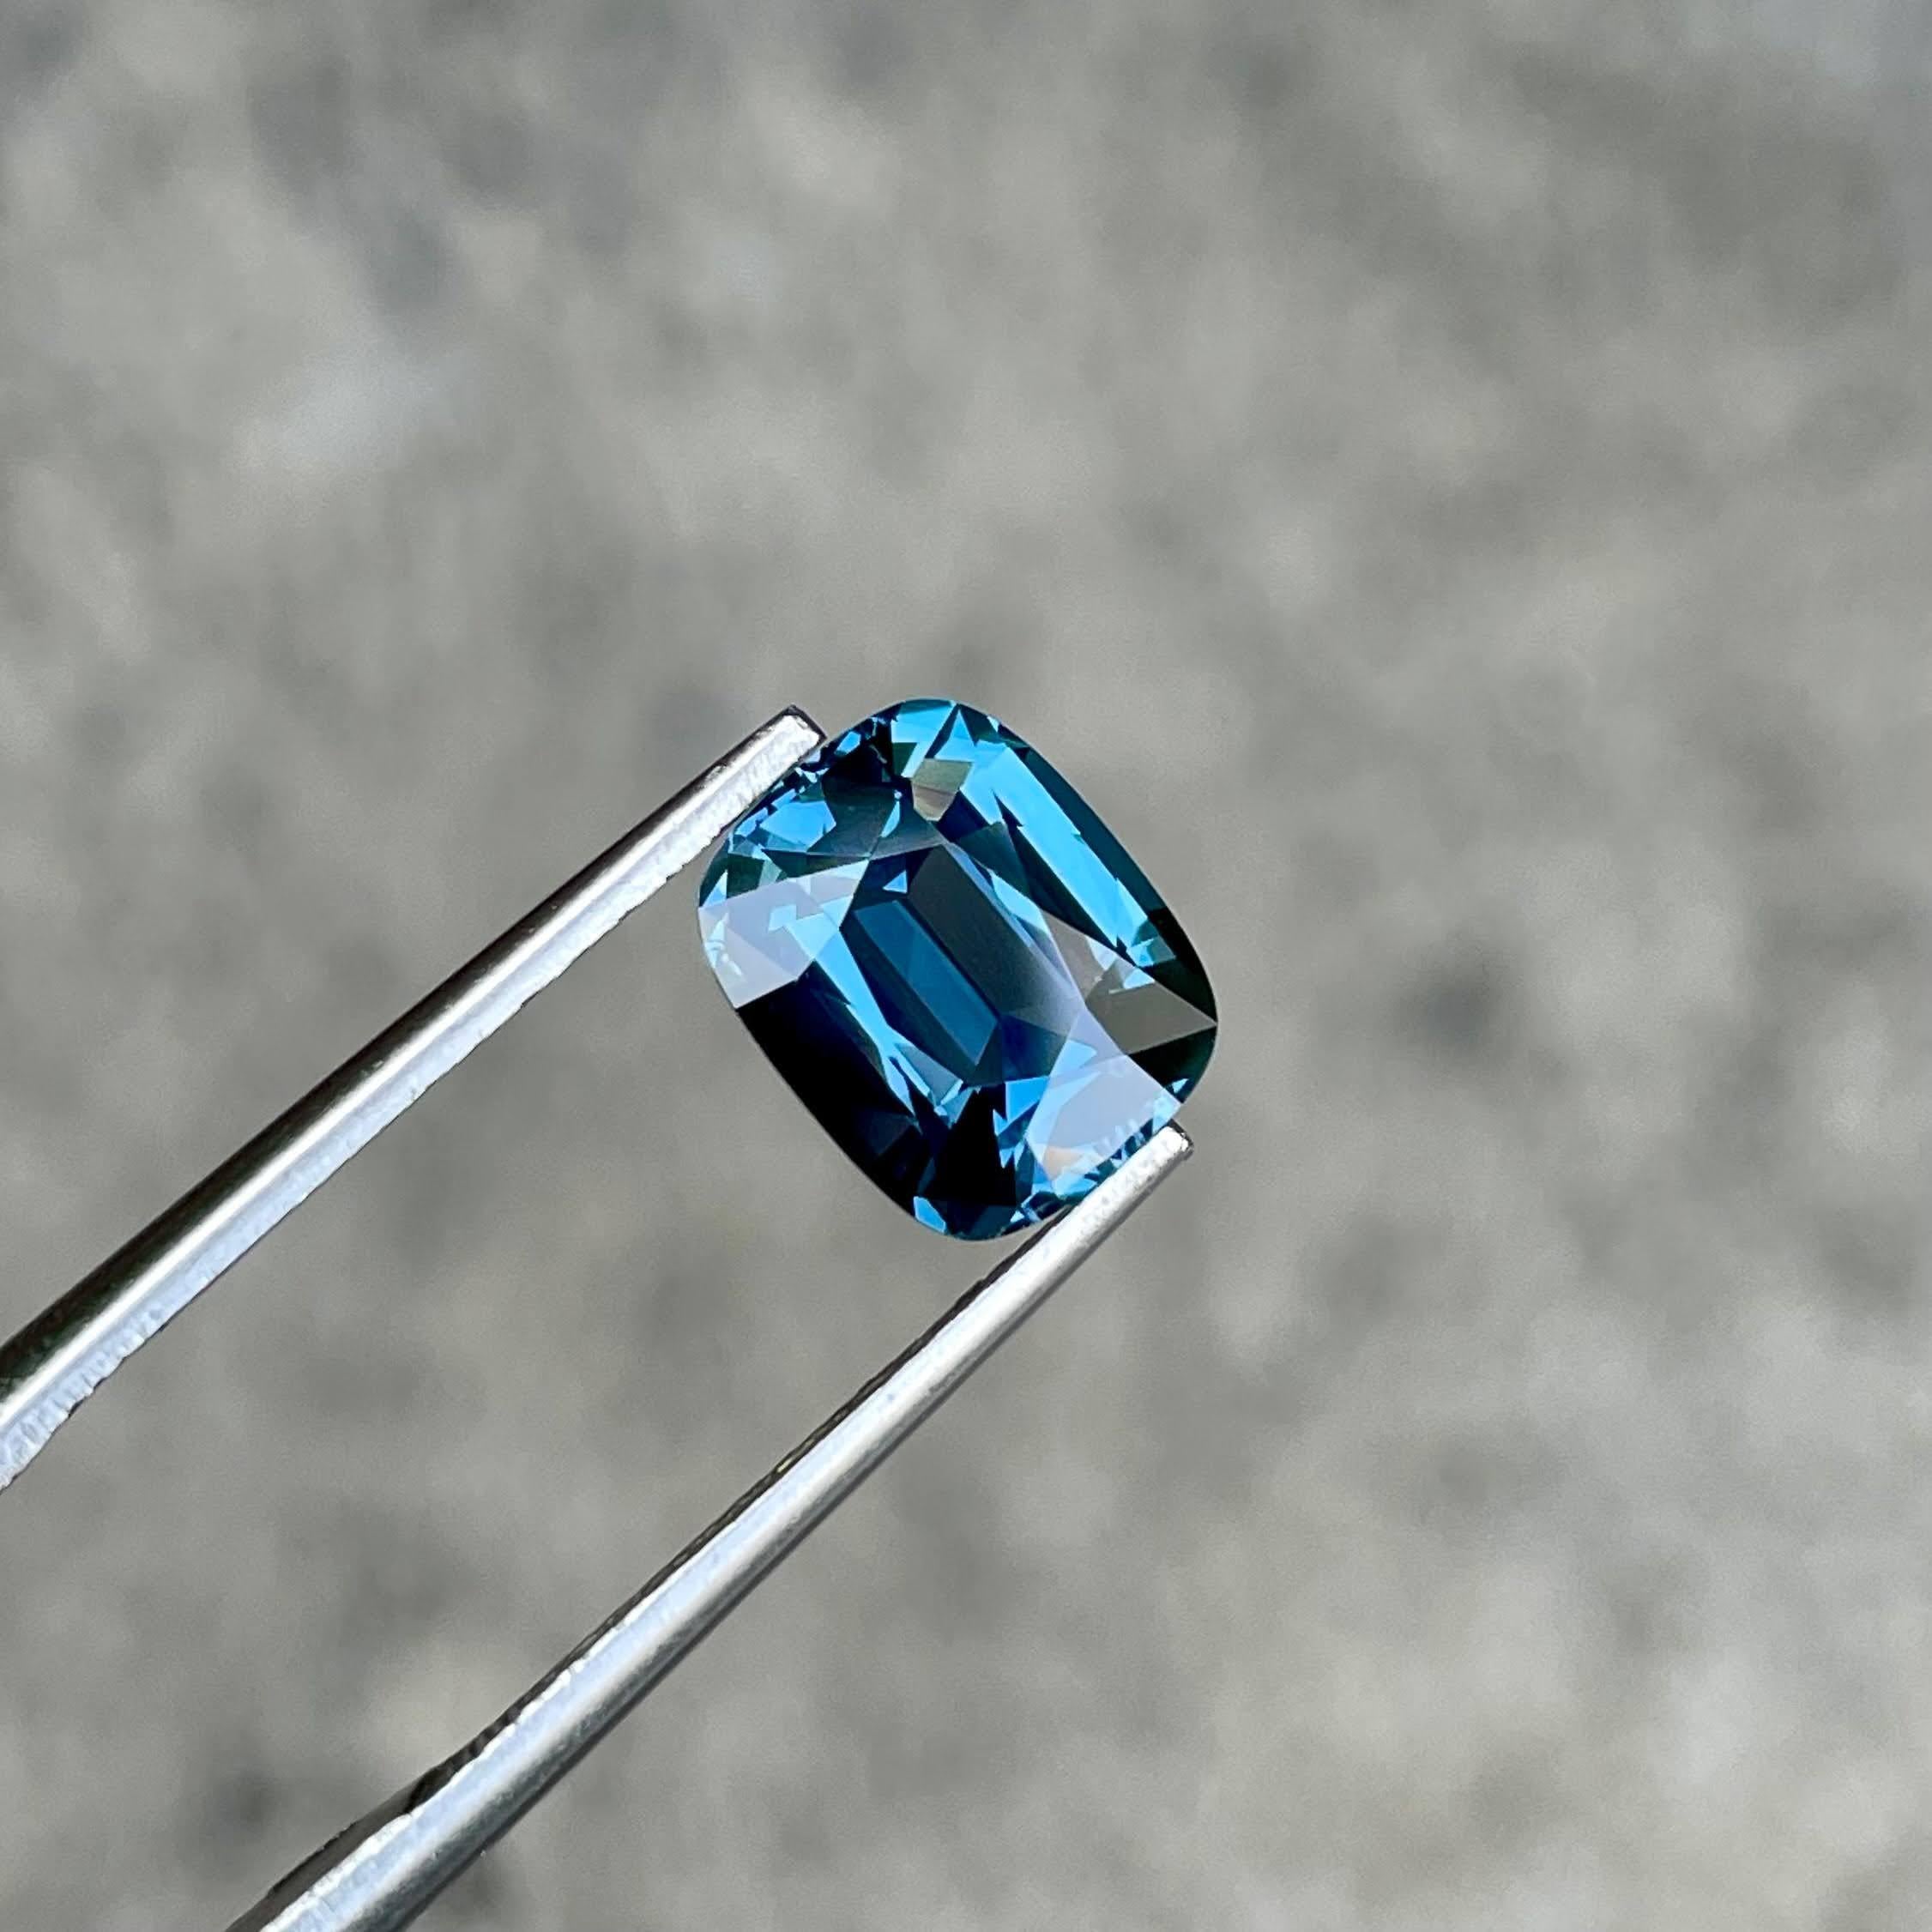 Poids 2,54 carats 
Dimensions 8,76x7,04x4,73 mm
Traitement aucun 
Origine Tanzanie 
Clarté de l'œil 
Coussin fantaisie
Coussin de forme




La pierre spinelle bleue de 2,54 carats est un exemple exquis de la beauté naturelle tanzanienne. Elle